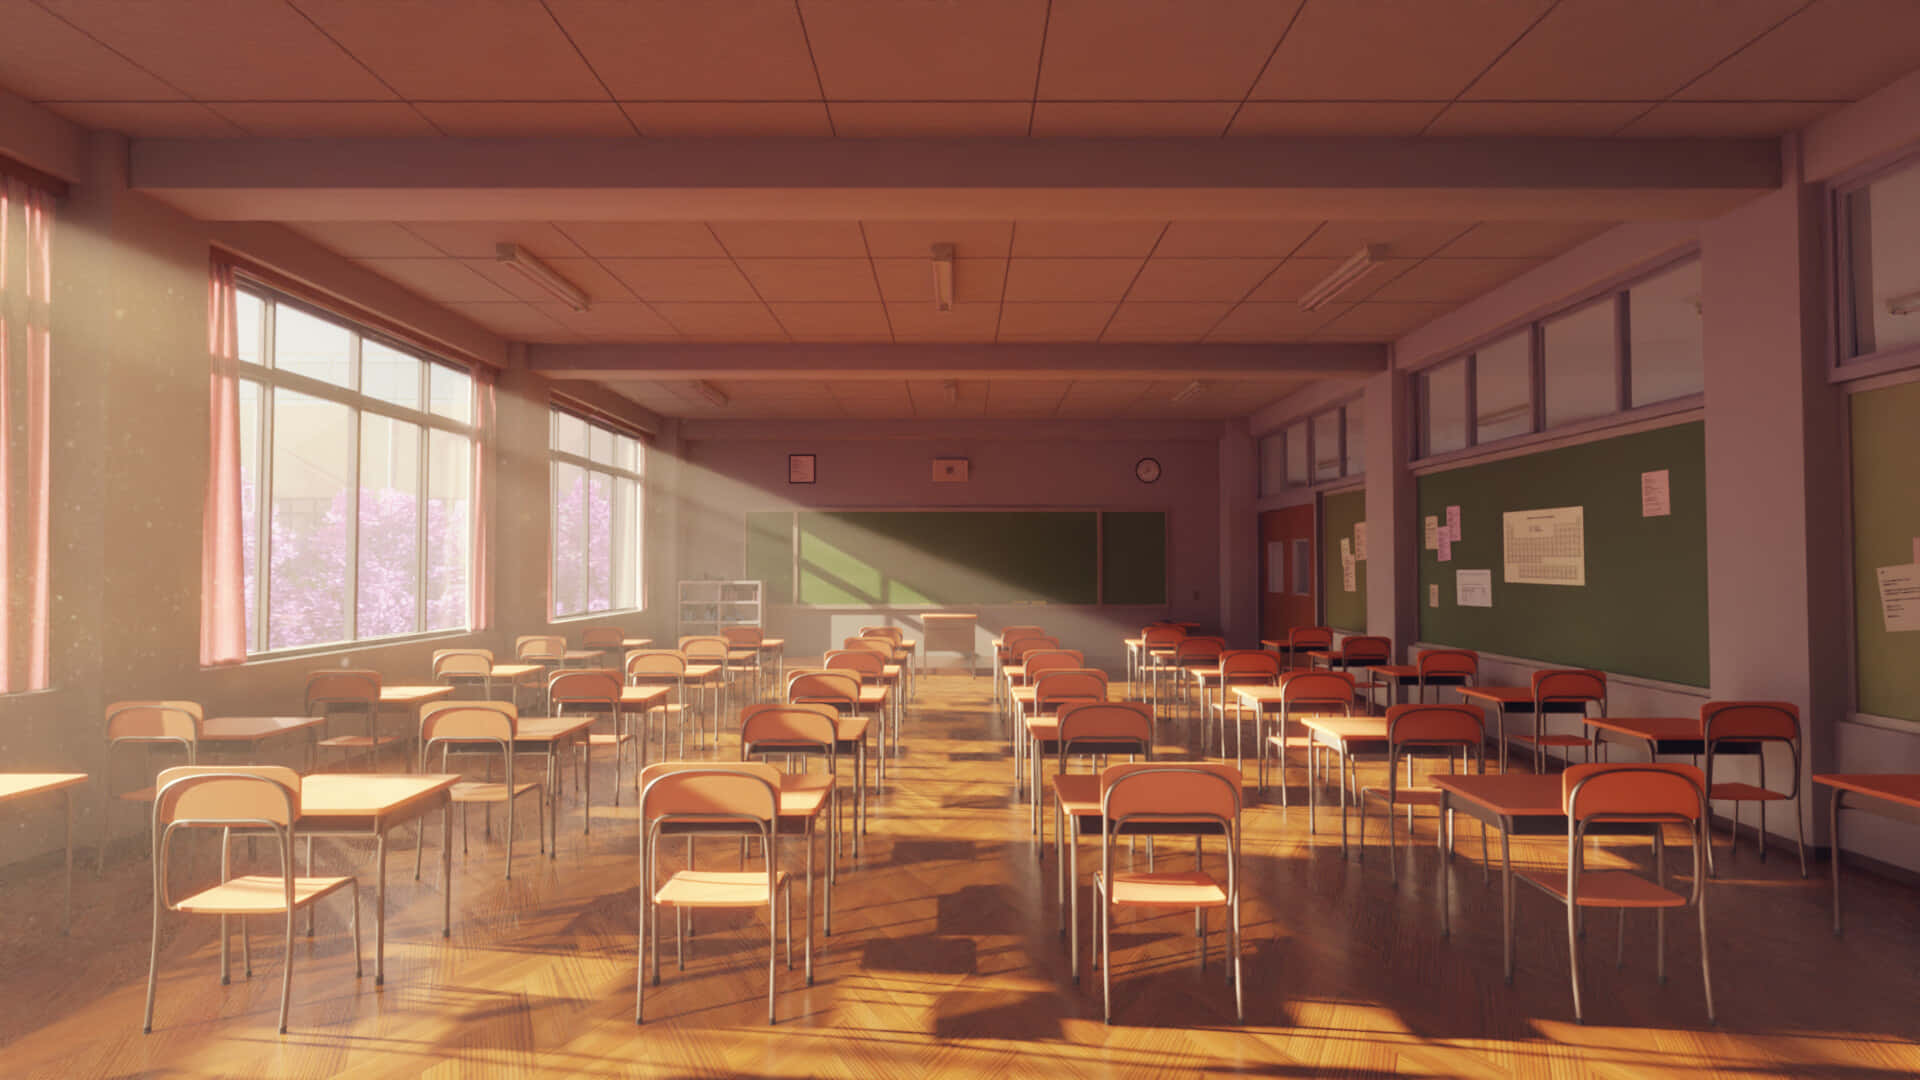 Sunset Glow Classroom Wallpaper